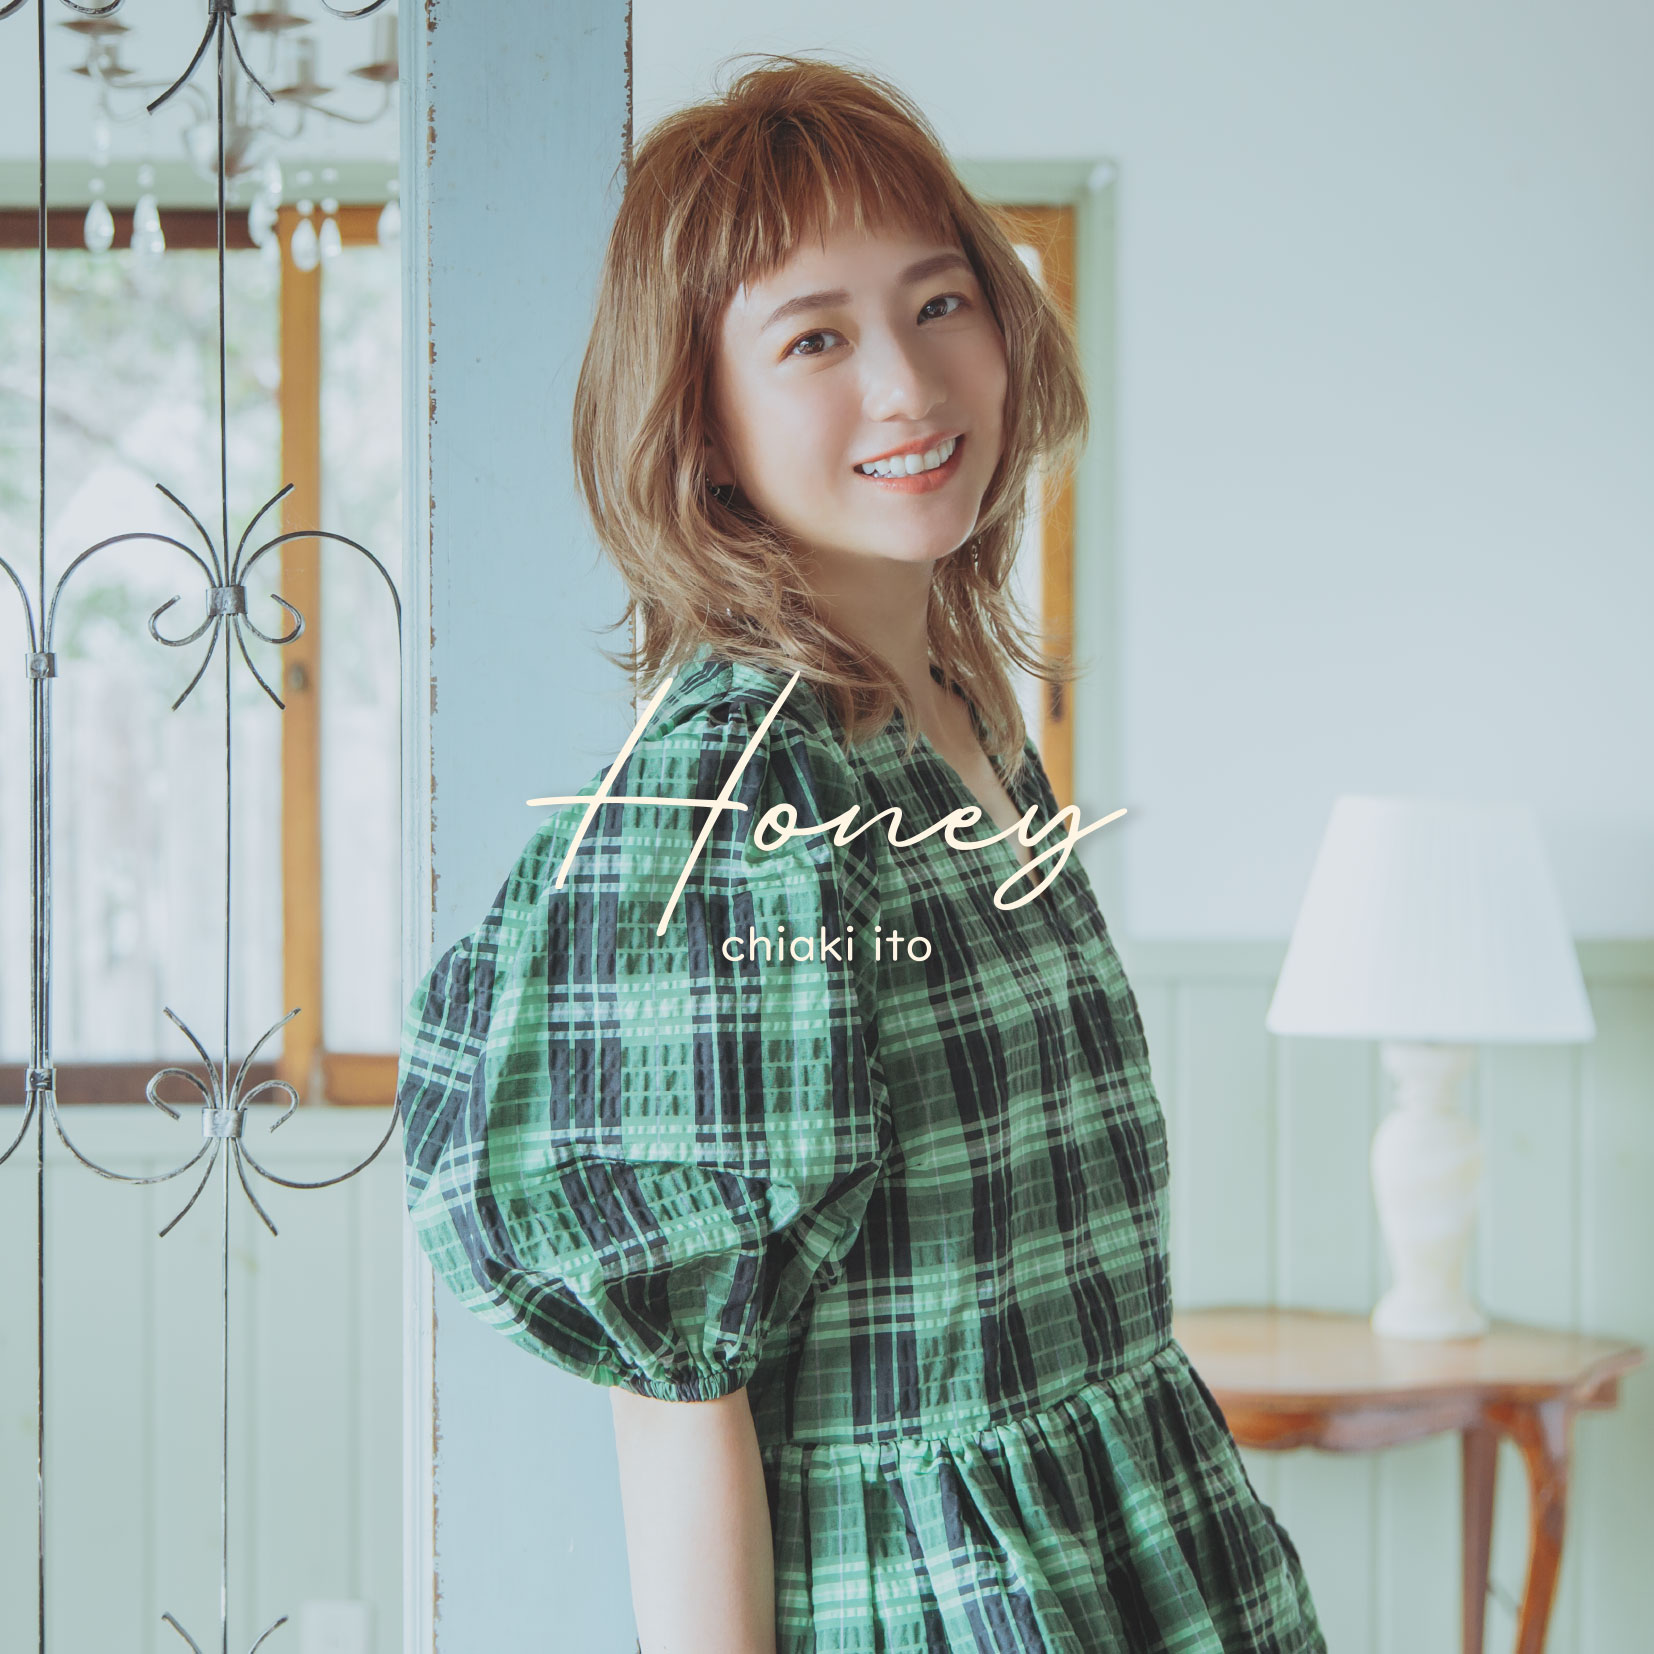 Chiaki Ito Mini Album 【Honey】Release Event